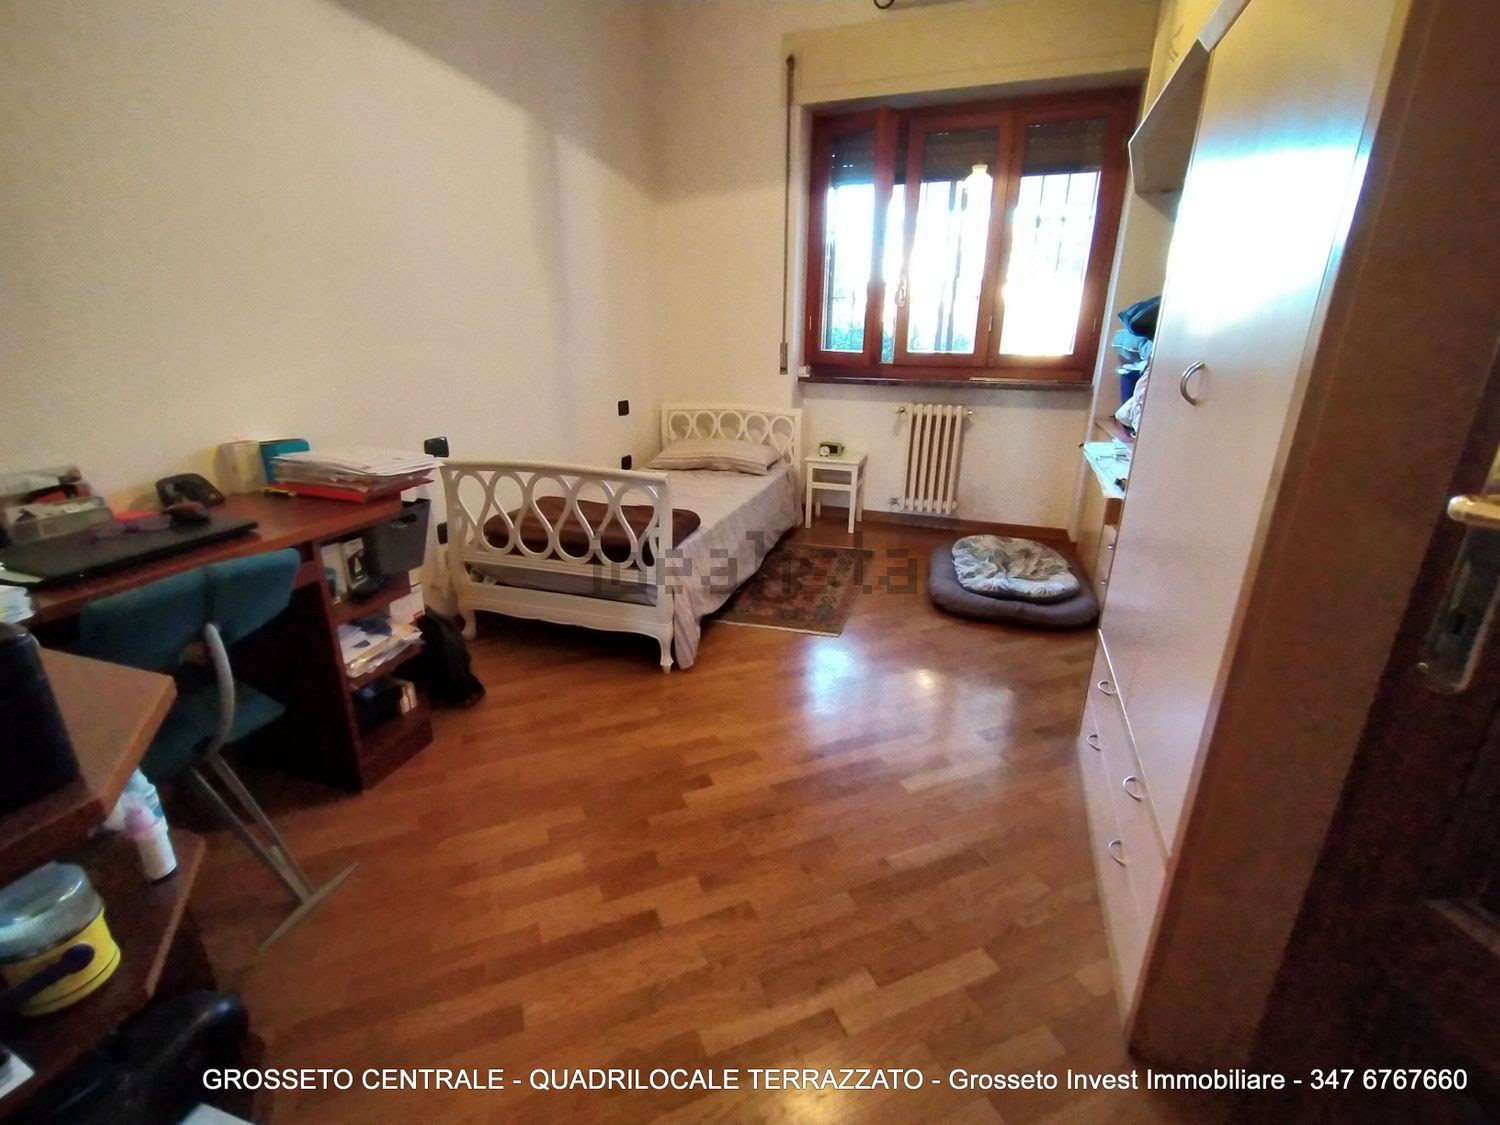 Grosseto Invest di Luigi Ciampi vendita appartamento Camera da letto di Quadrilocale vendita via Depretis, 30, Centro, Grosseto